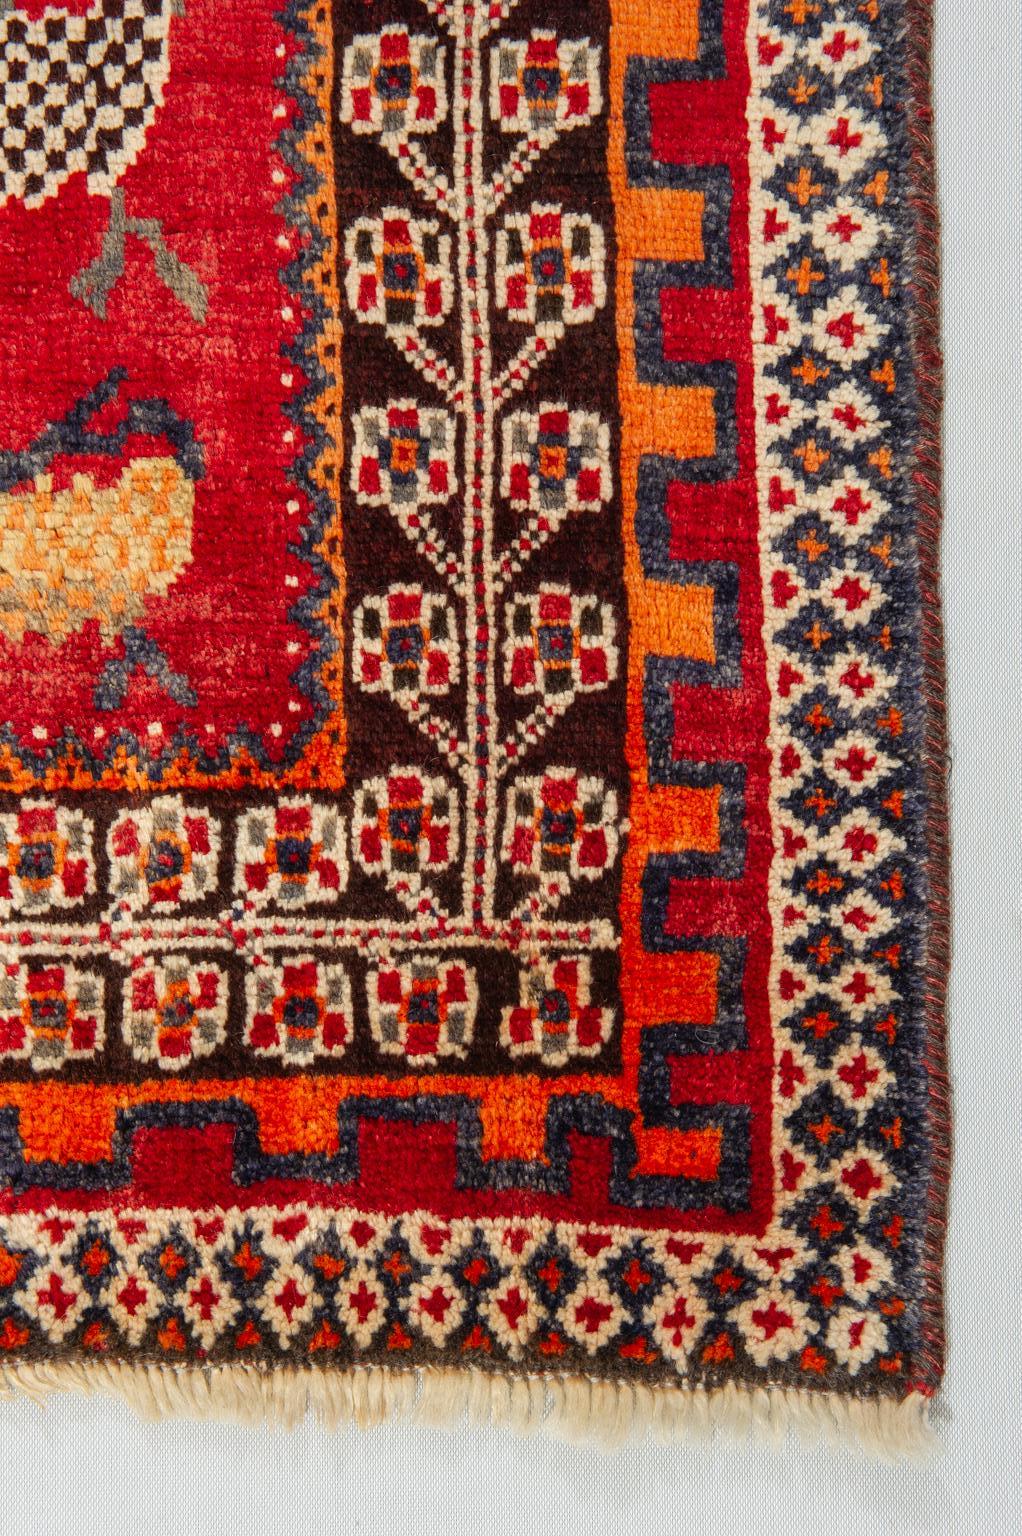 Hand-Knotted Nomadic Kurdestan Carpet or Rug For Sale